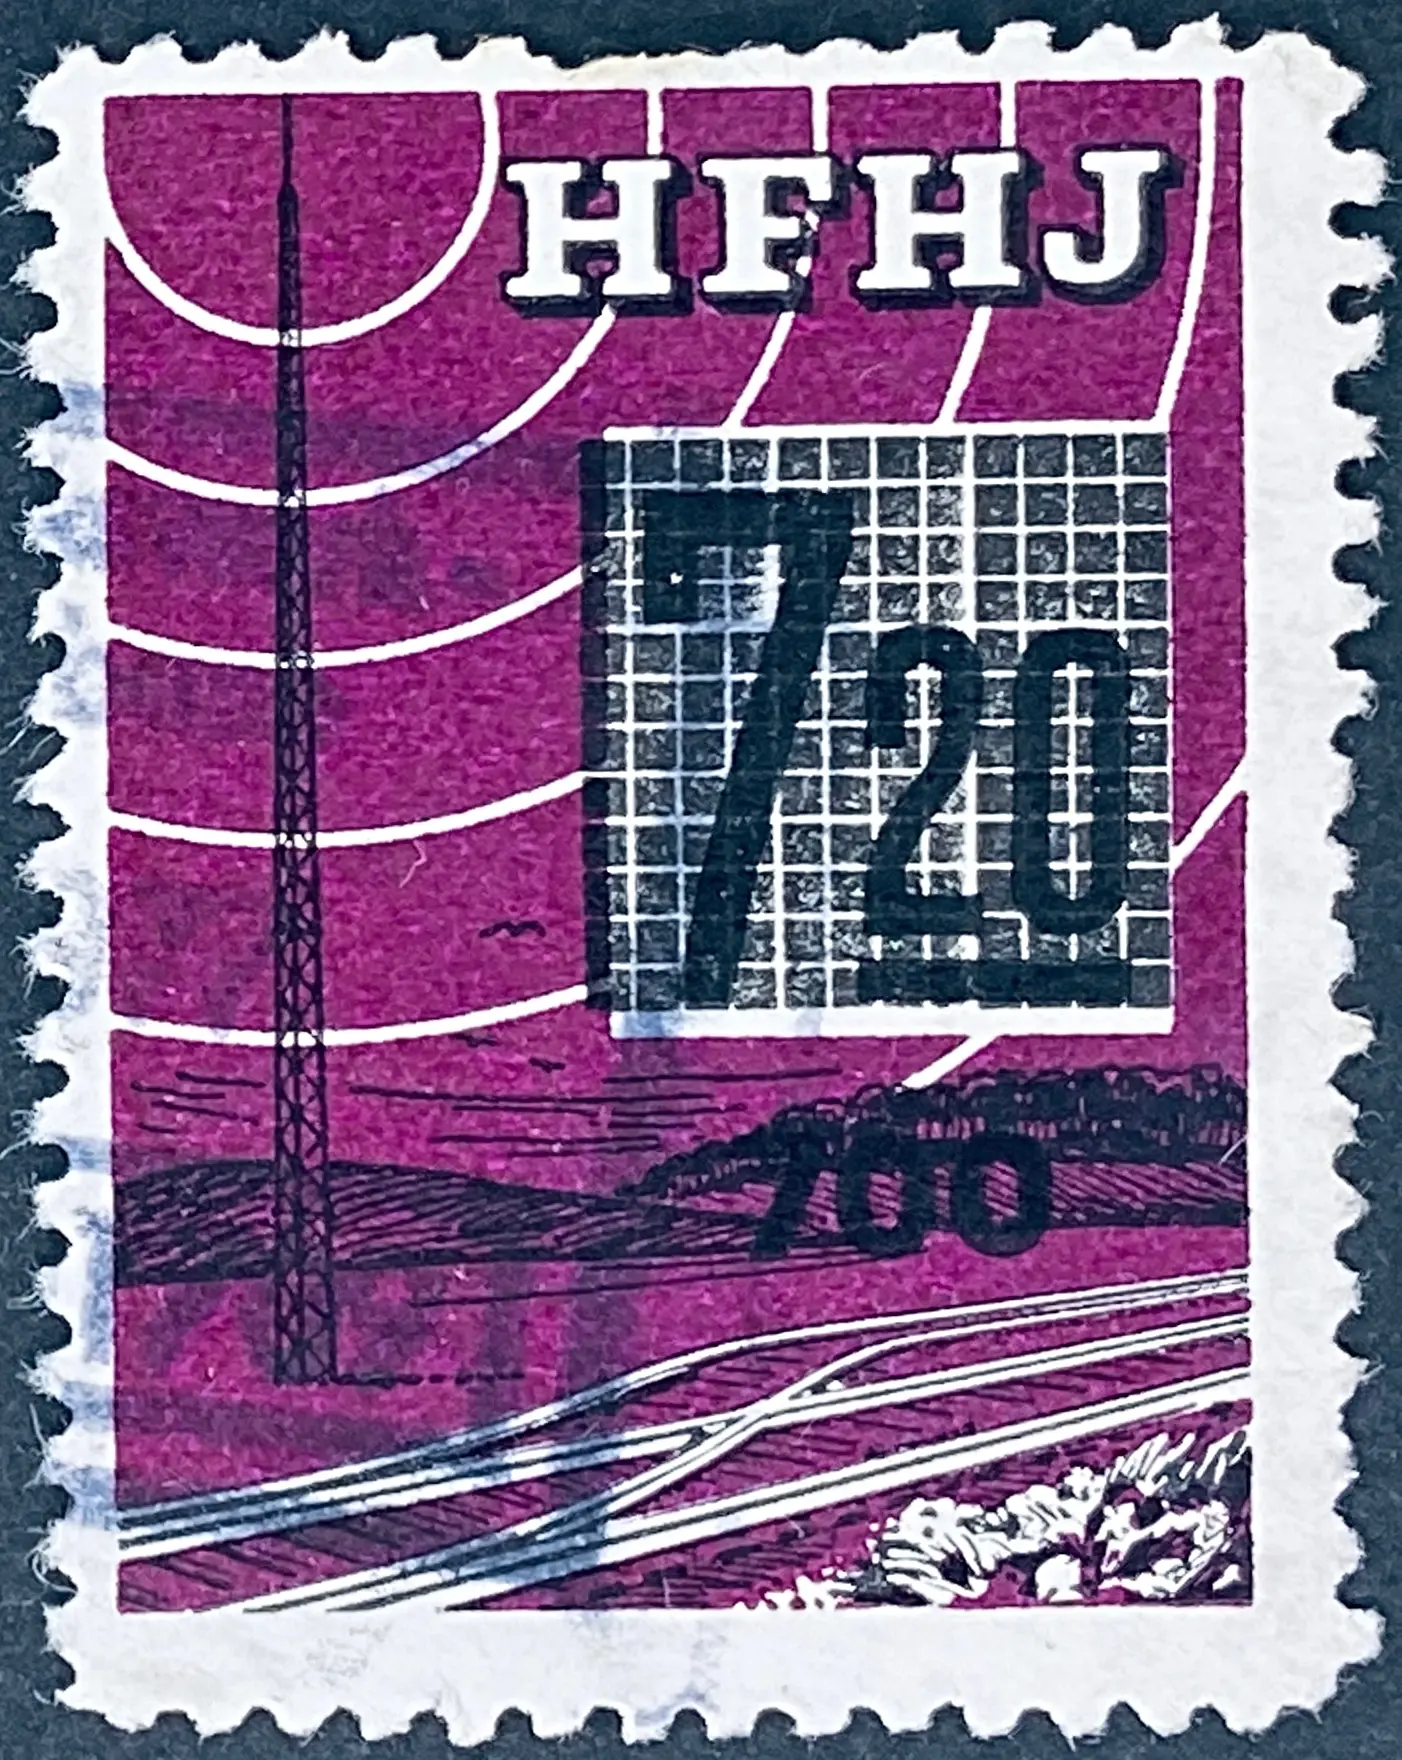 HFHJ 152 - Provisorium (overtryk) 700 Øre sort på 7<sup>20</sup> Kroner Motiv: Radiomast - Lilla - banemærket er stemplet.